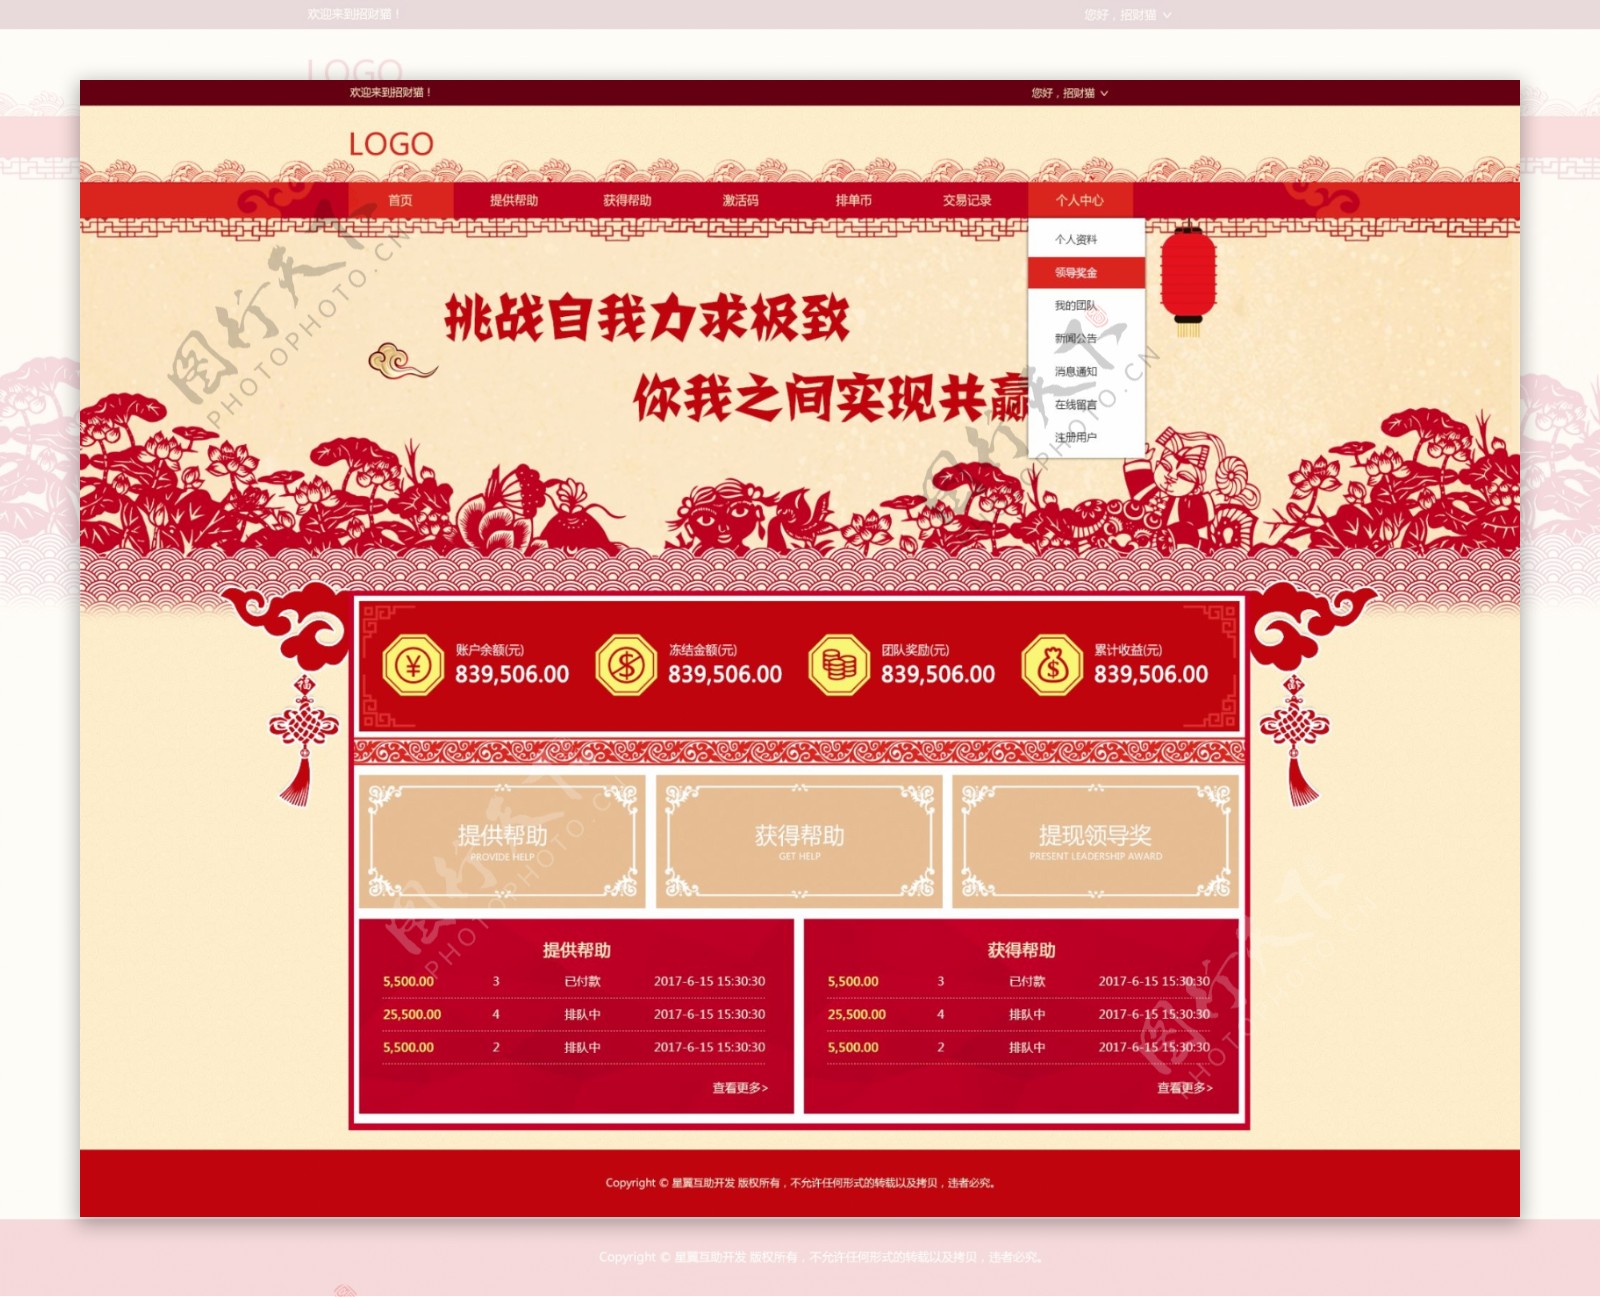 中国风红色金融互助平台首页设计